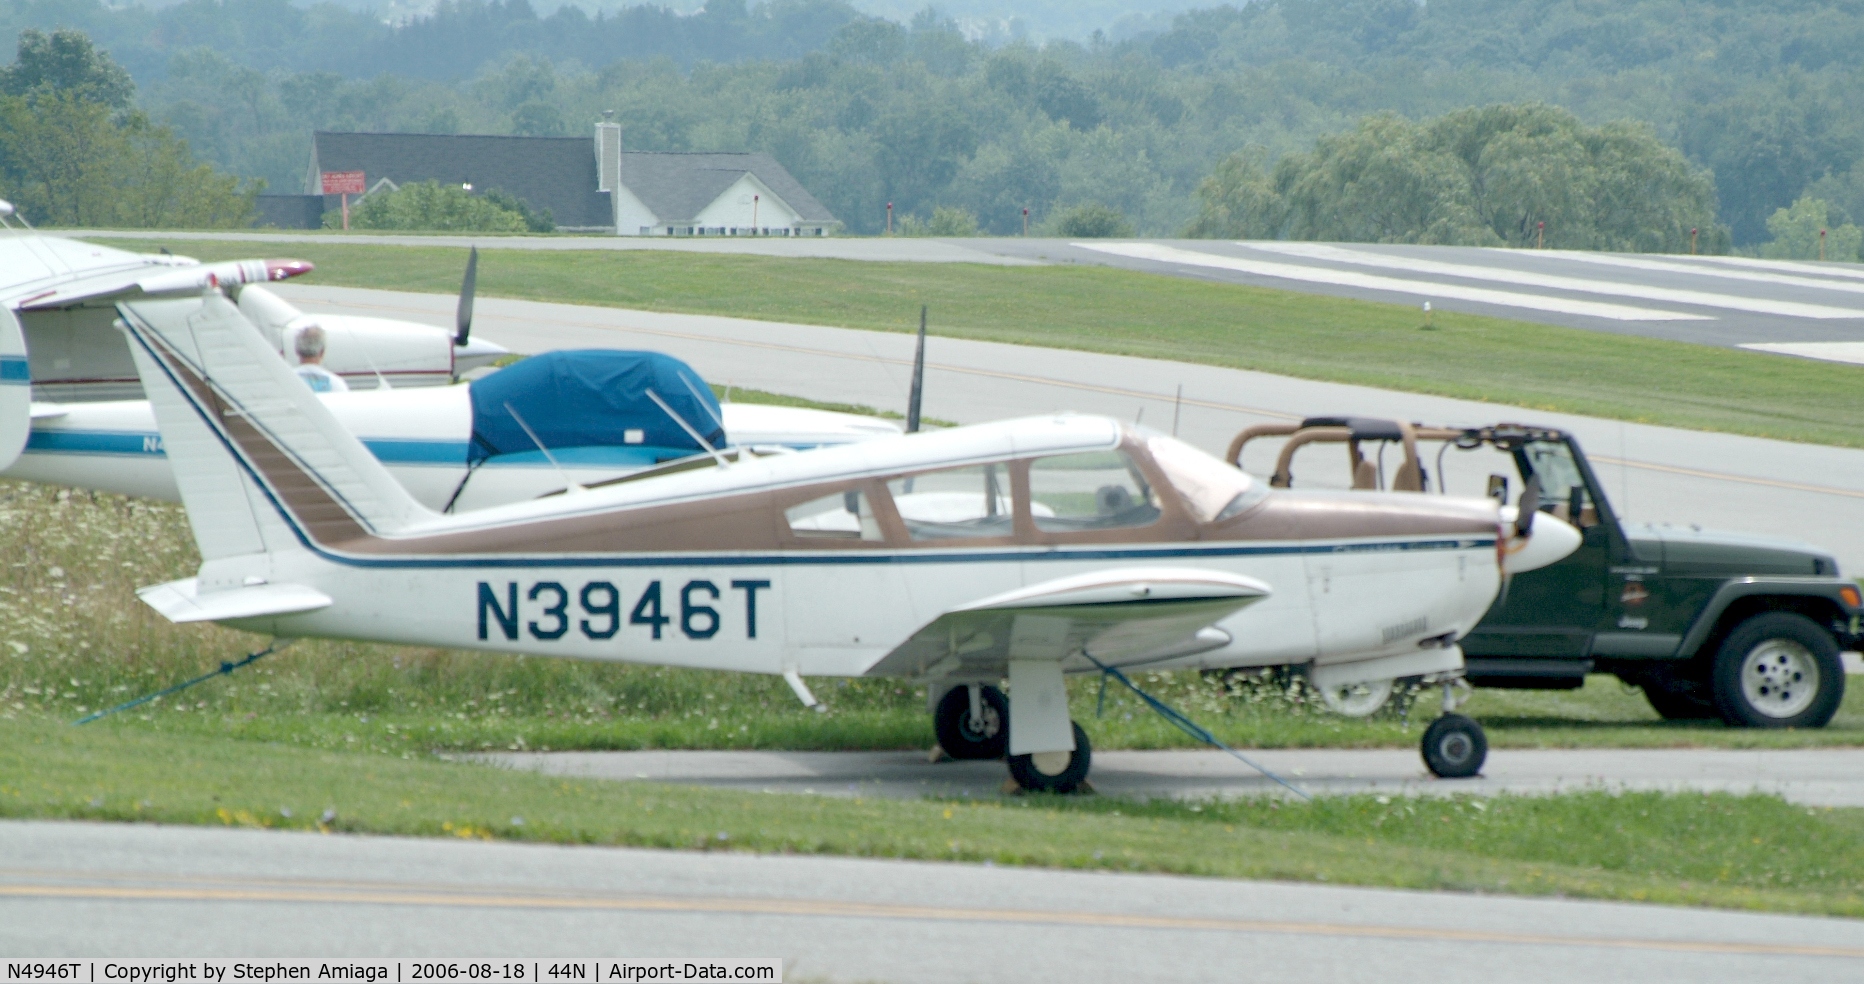 N4946T, 1972 Piper PA-28-140 C/N 28-7225286, Aside the runway.